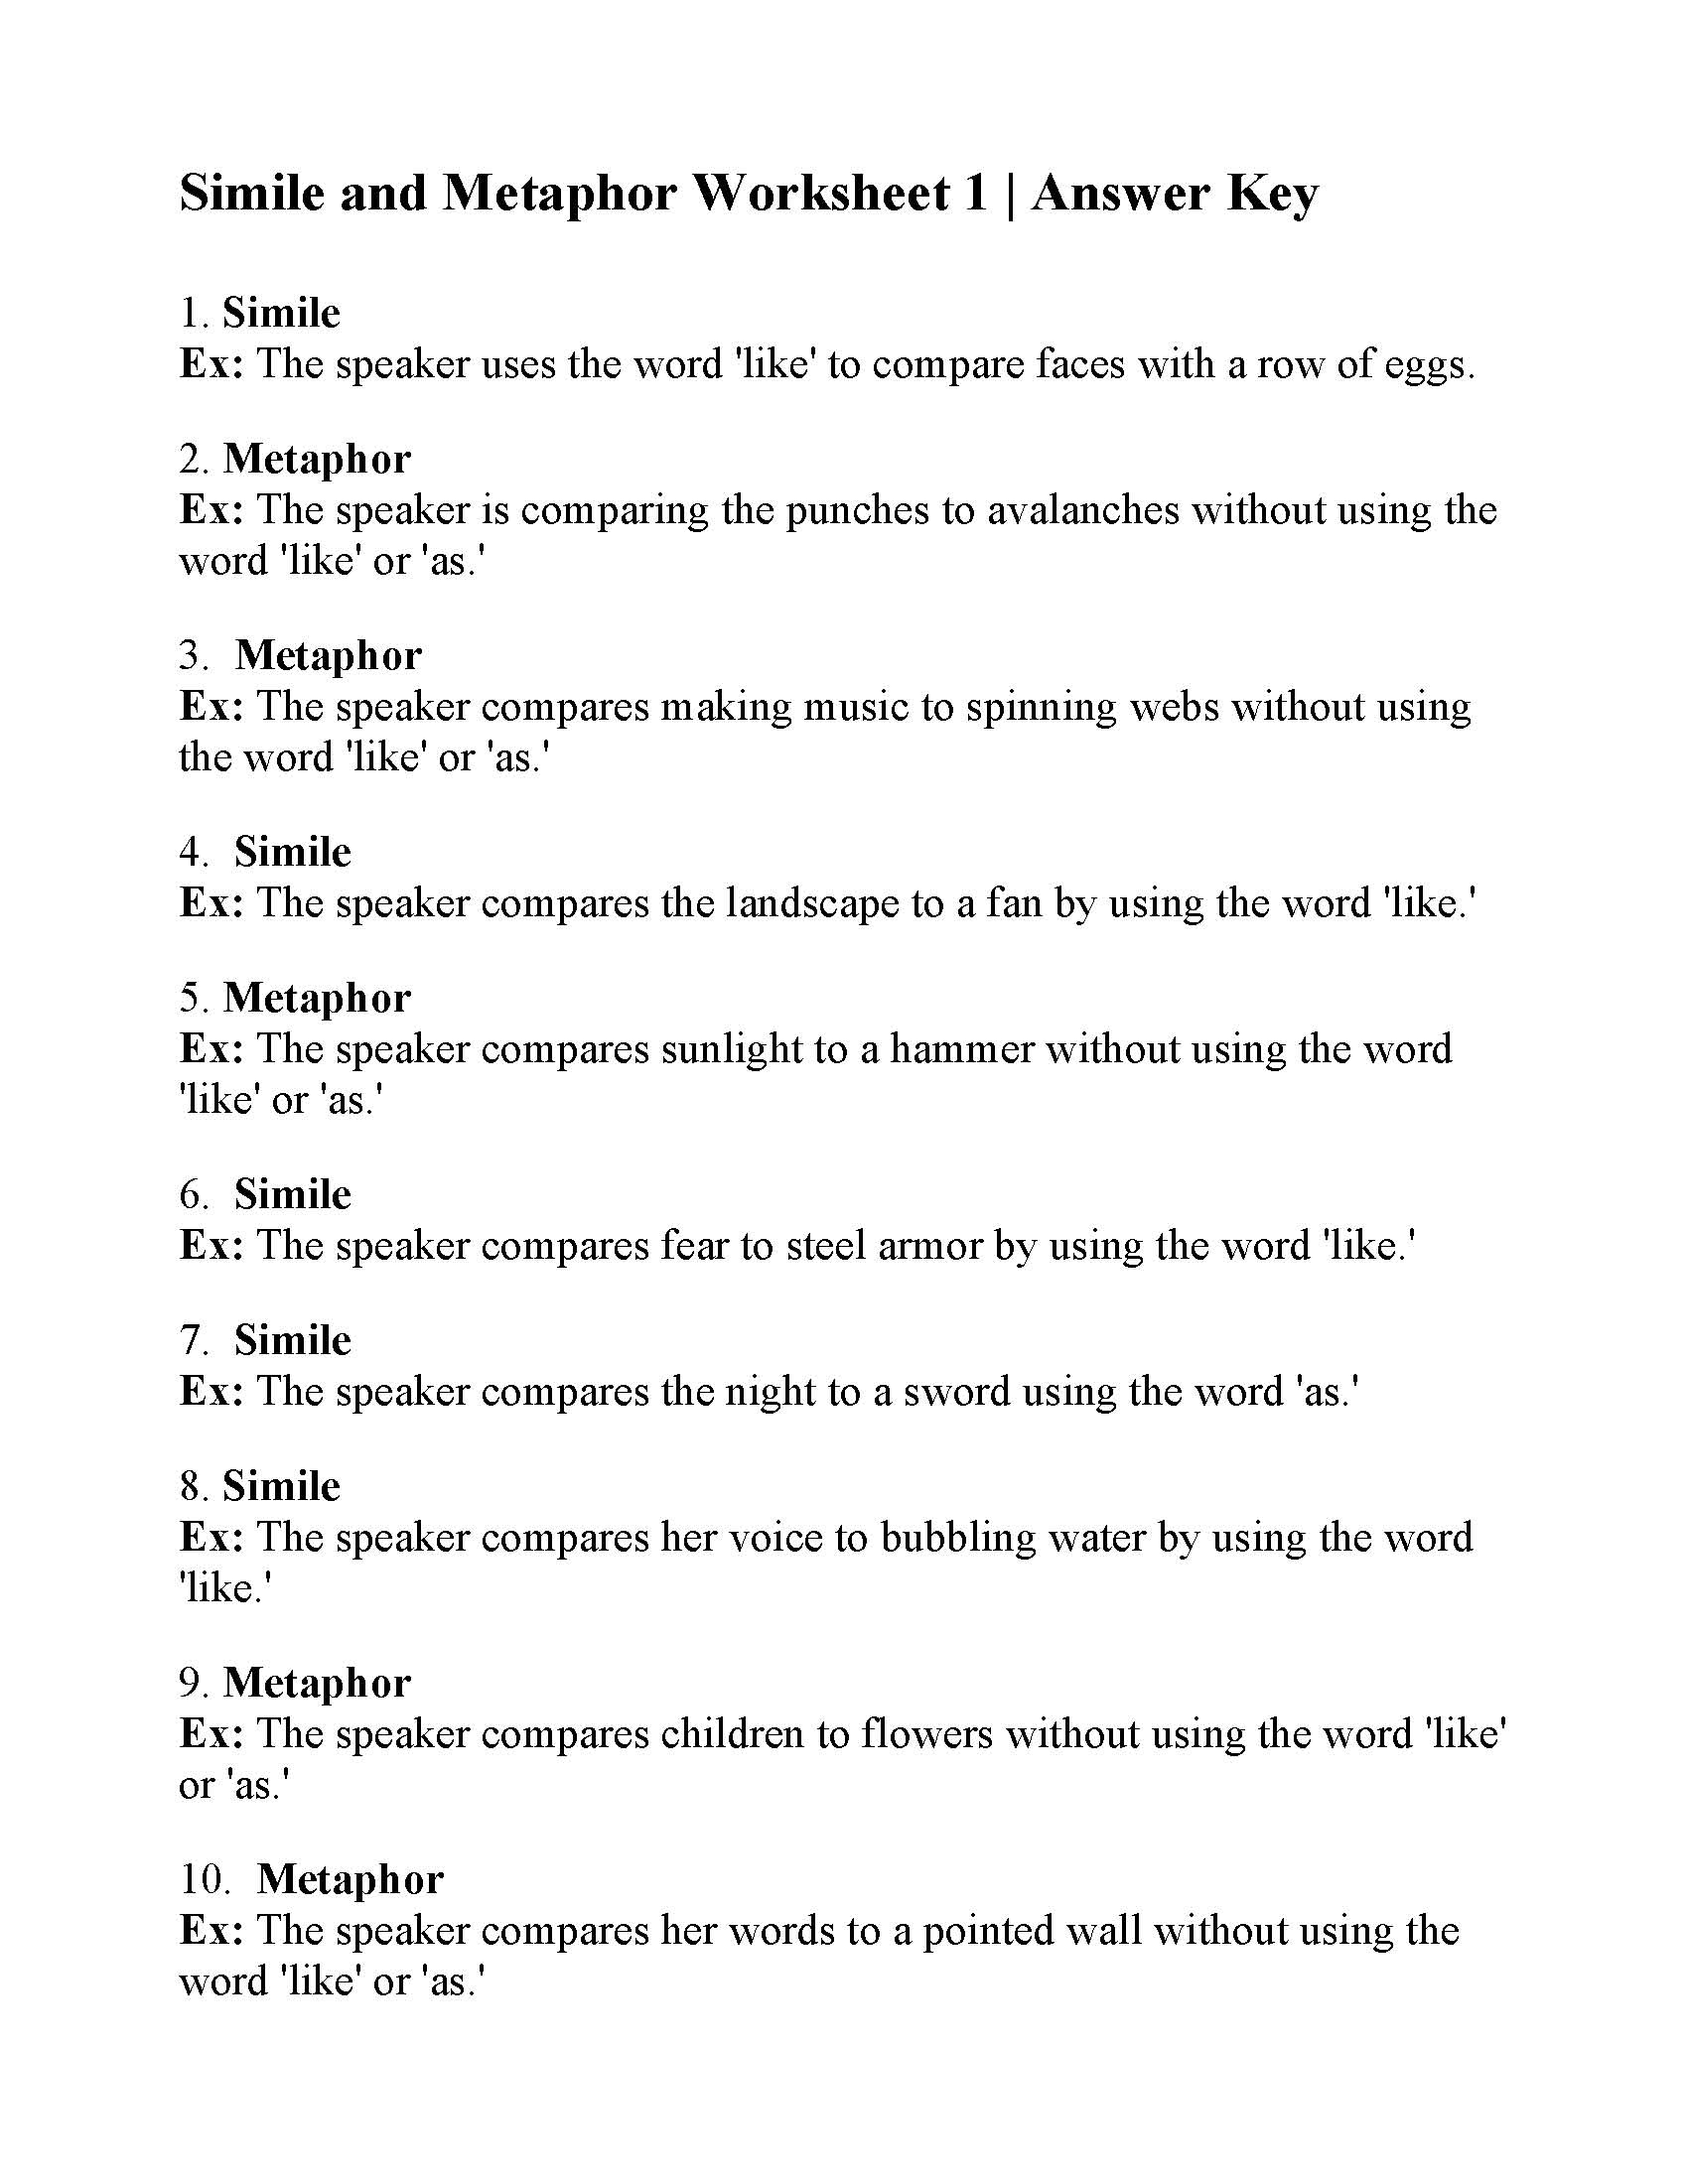 Metaphor Worksheets Pdf Identifying Similes Metaphors Esl Worksheet By Jridder T His 